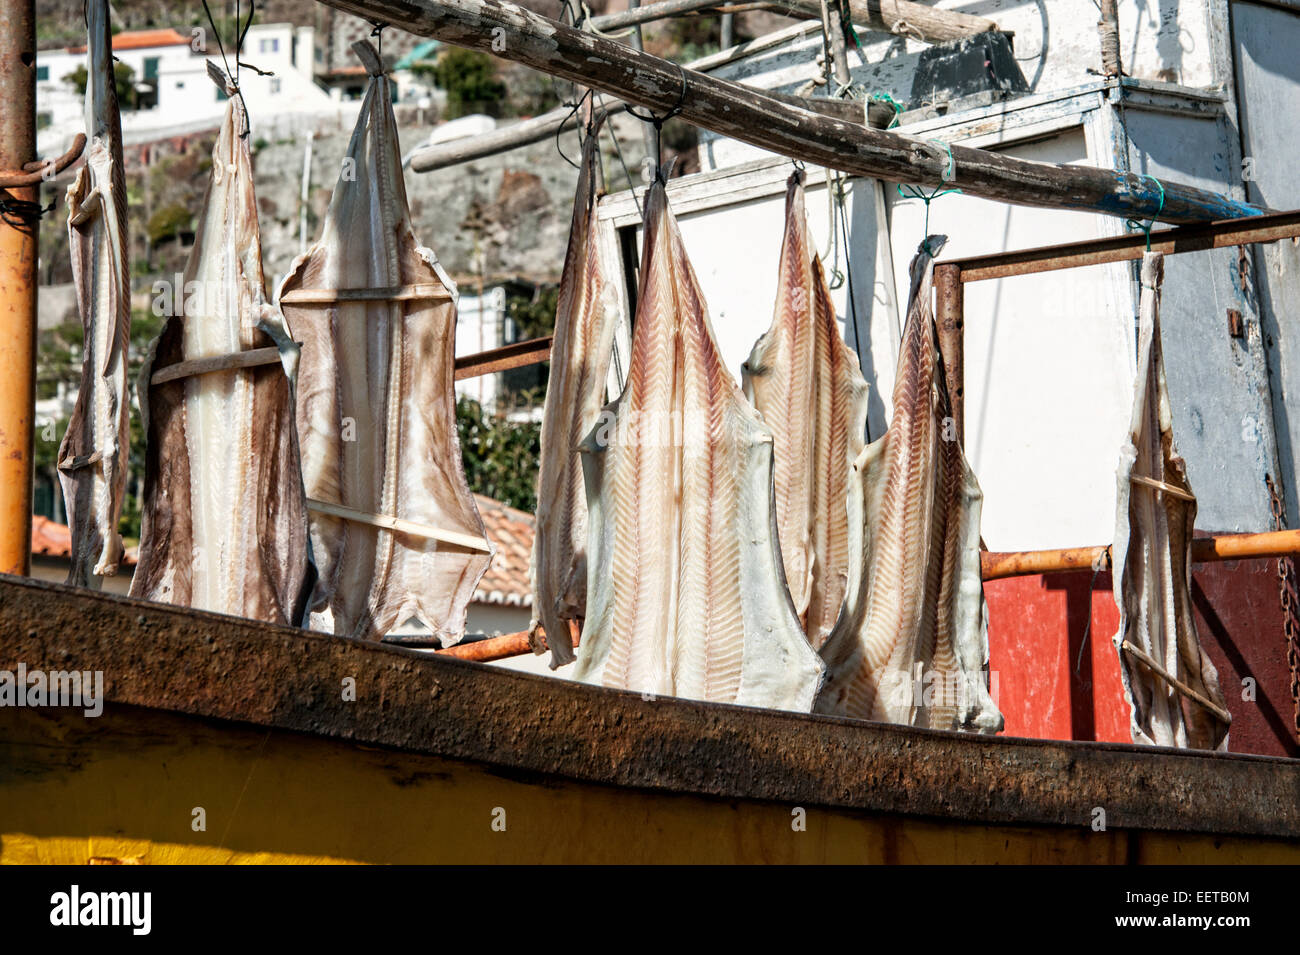 Reisen, Europa, il Portogallo, la Madera; Getrockneter Fisch, Stockfisch, Bacalhau auf einem Fischerboot im Hafen von Camara de Lobos. Foto Stock